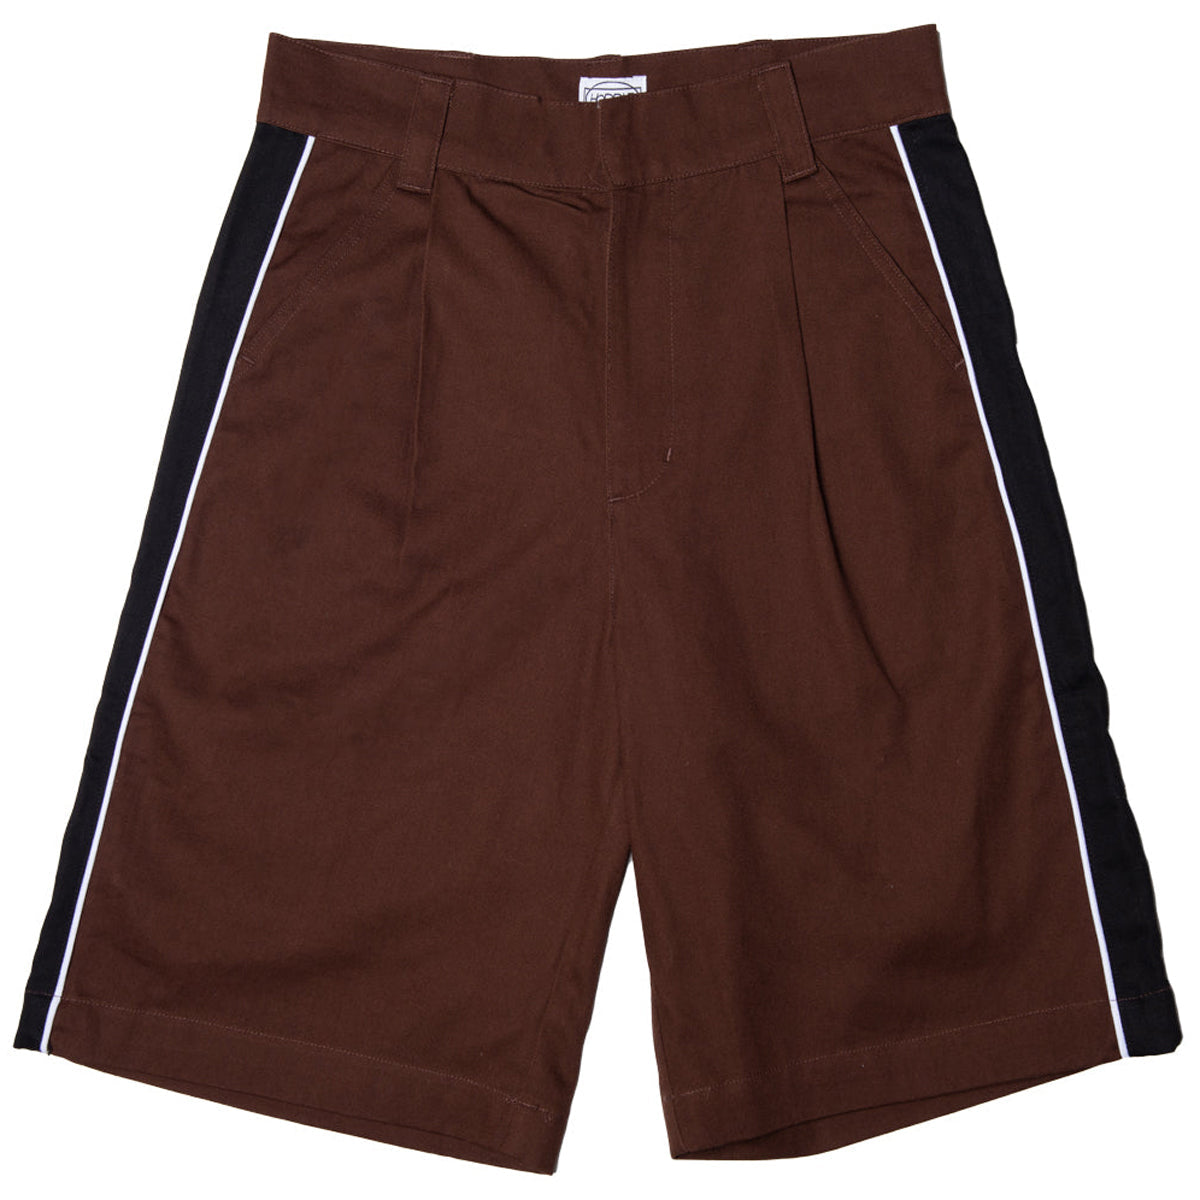 Hoddle Bermuda Shorts - Chocolate/Black image 1